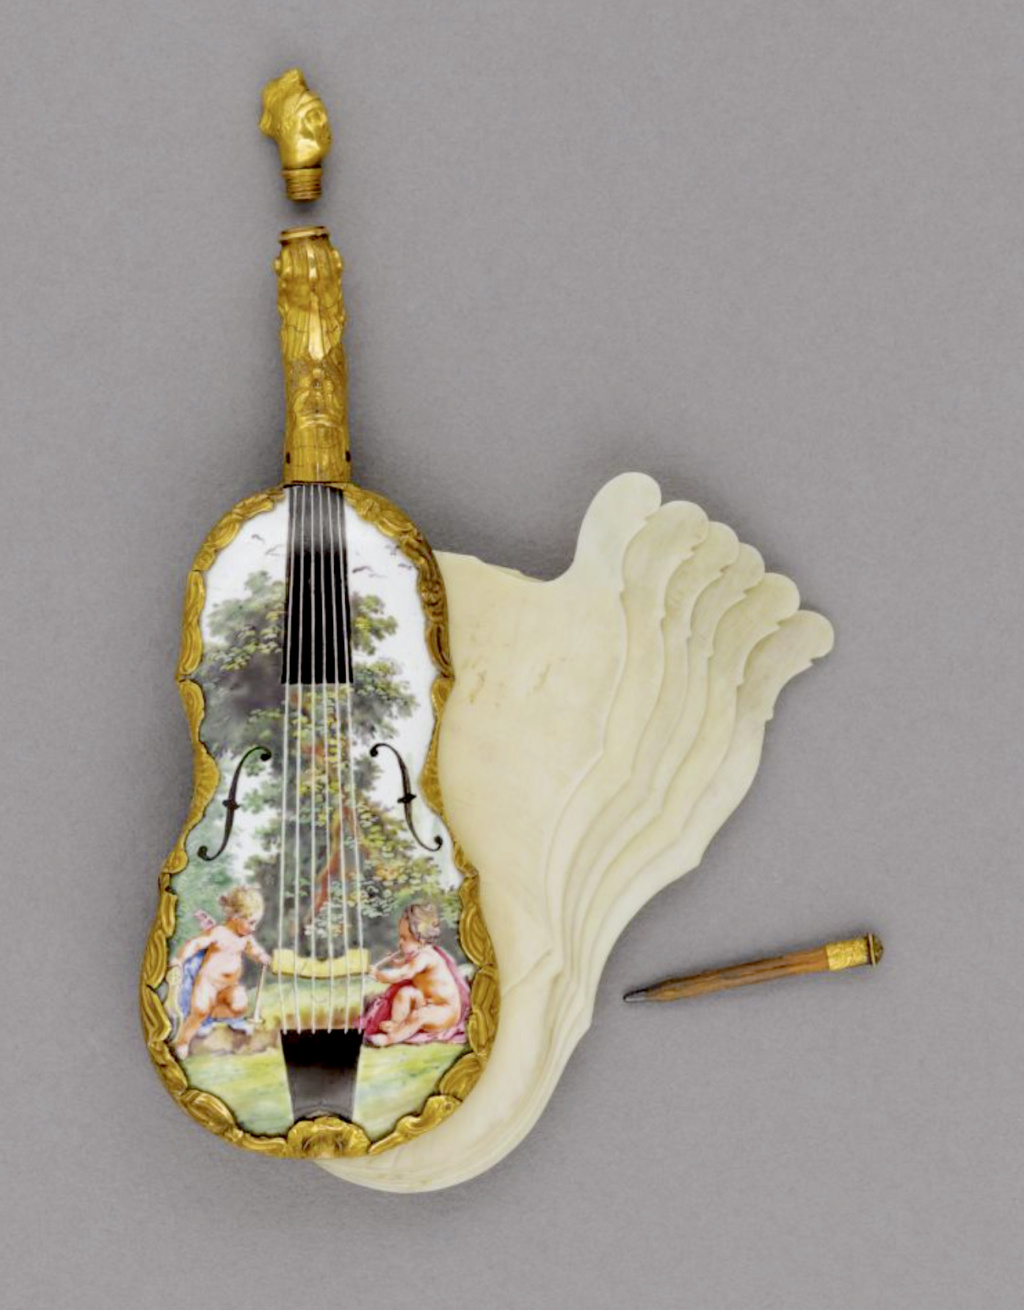 Exposition : Luxe de poche - Petits objets précieux au siècle des Lumières. Musée Cognacq-Jay Capt1474